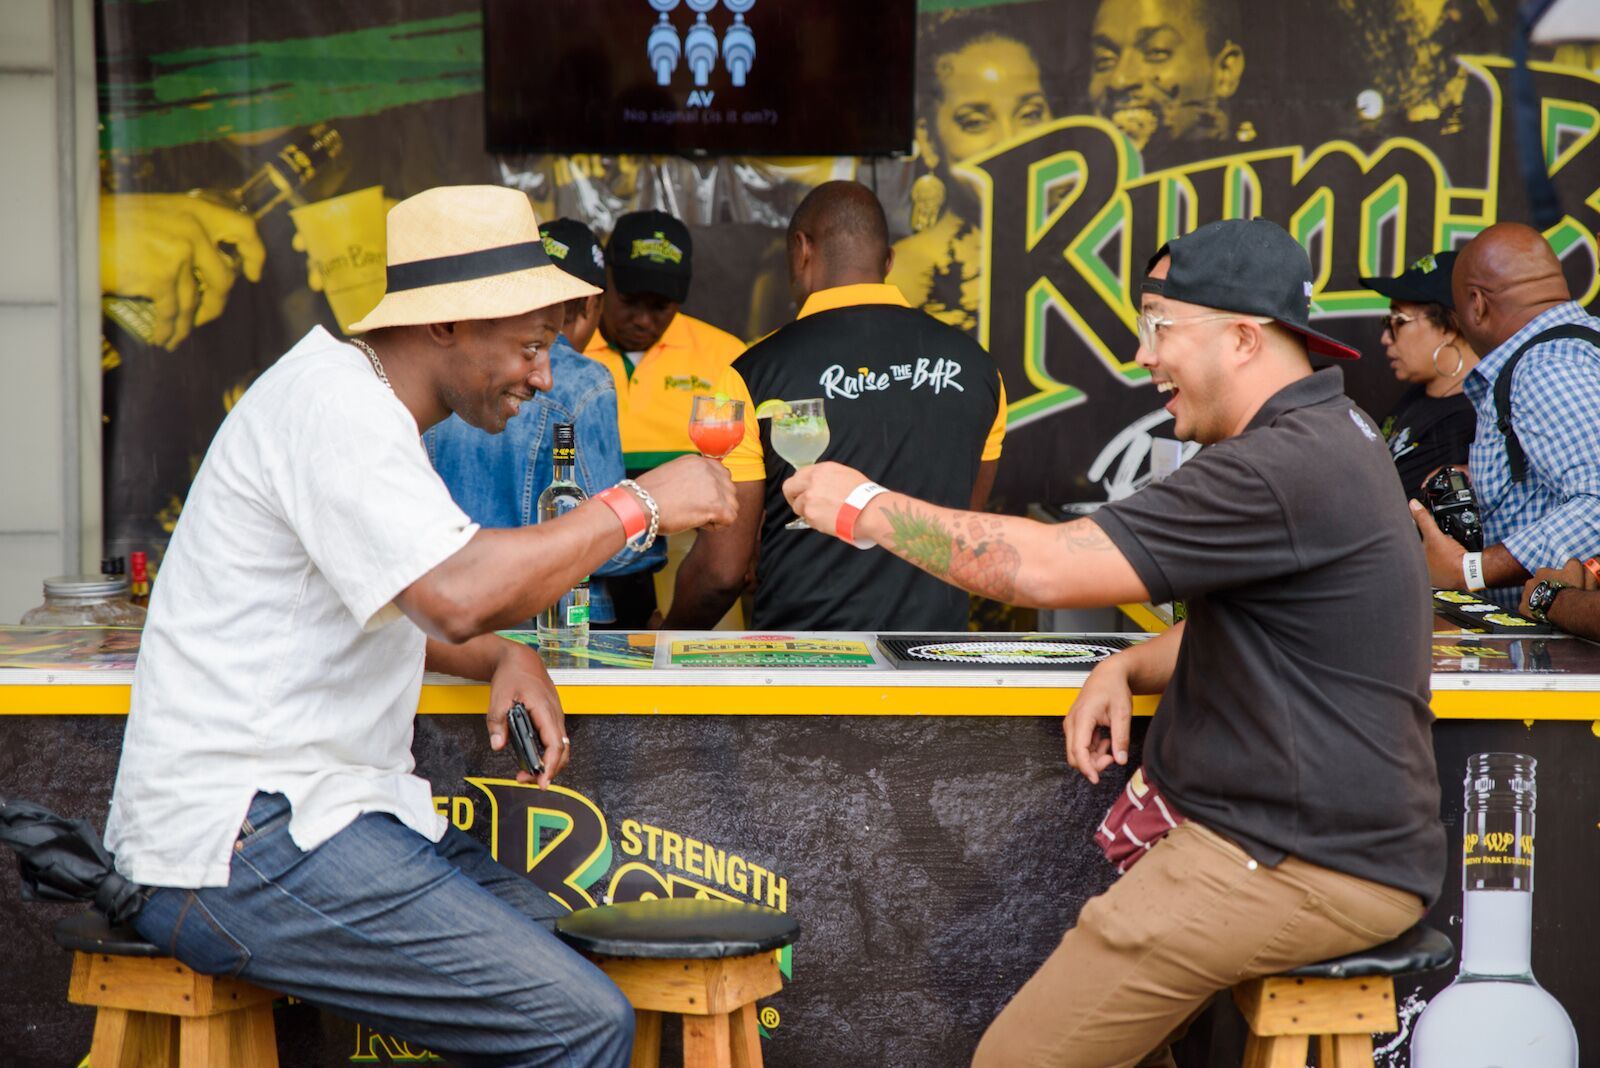 drinkinga t rum festival in jamaica